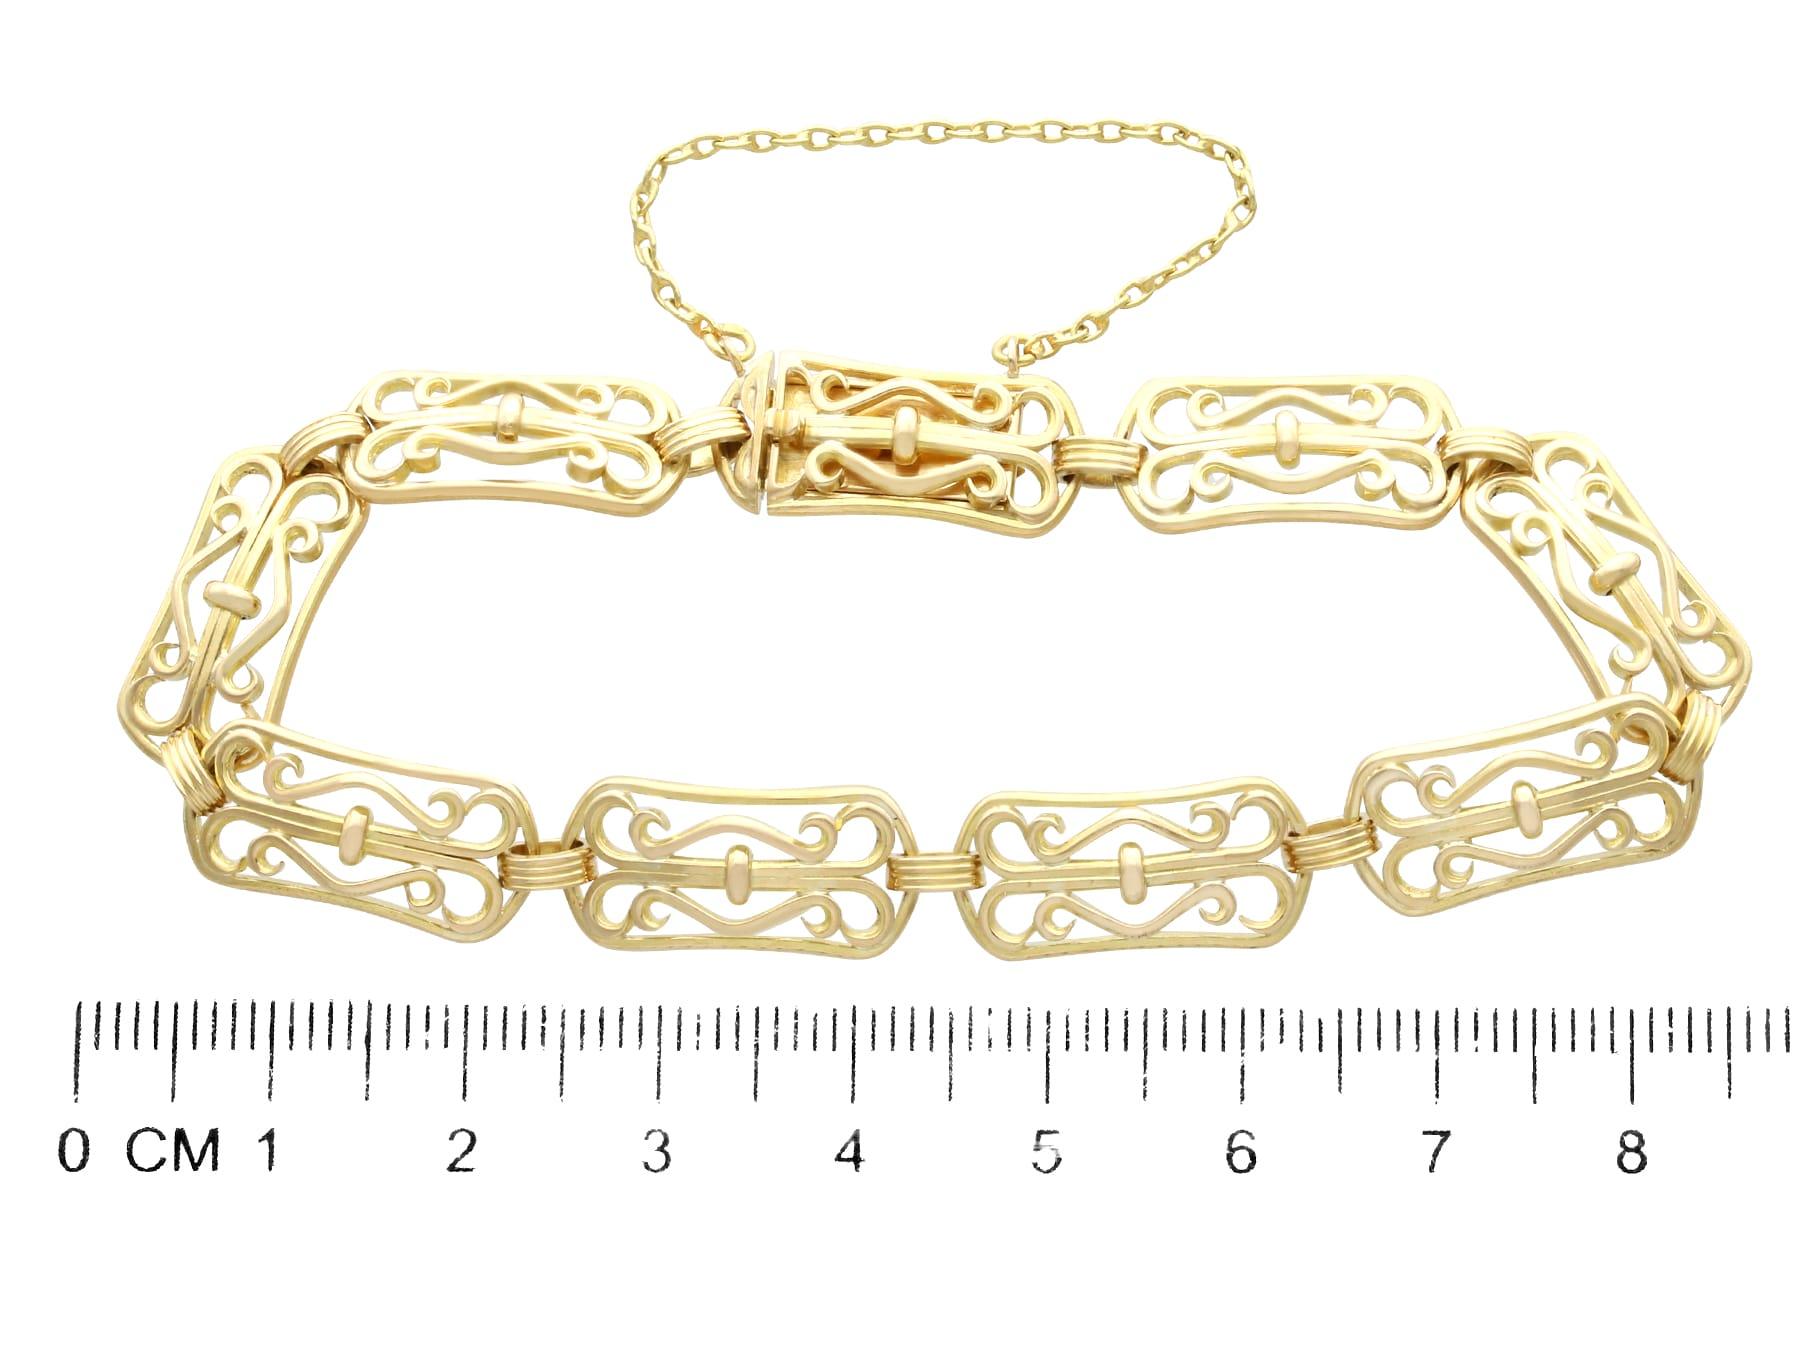 Antique French Art Nouveau 18k Yellow Gold Bracelet 4